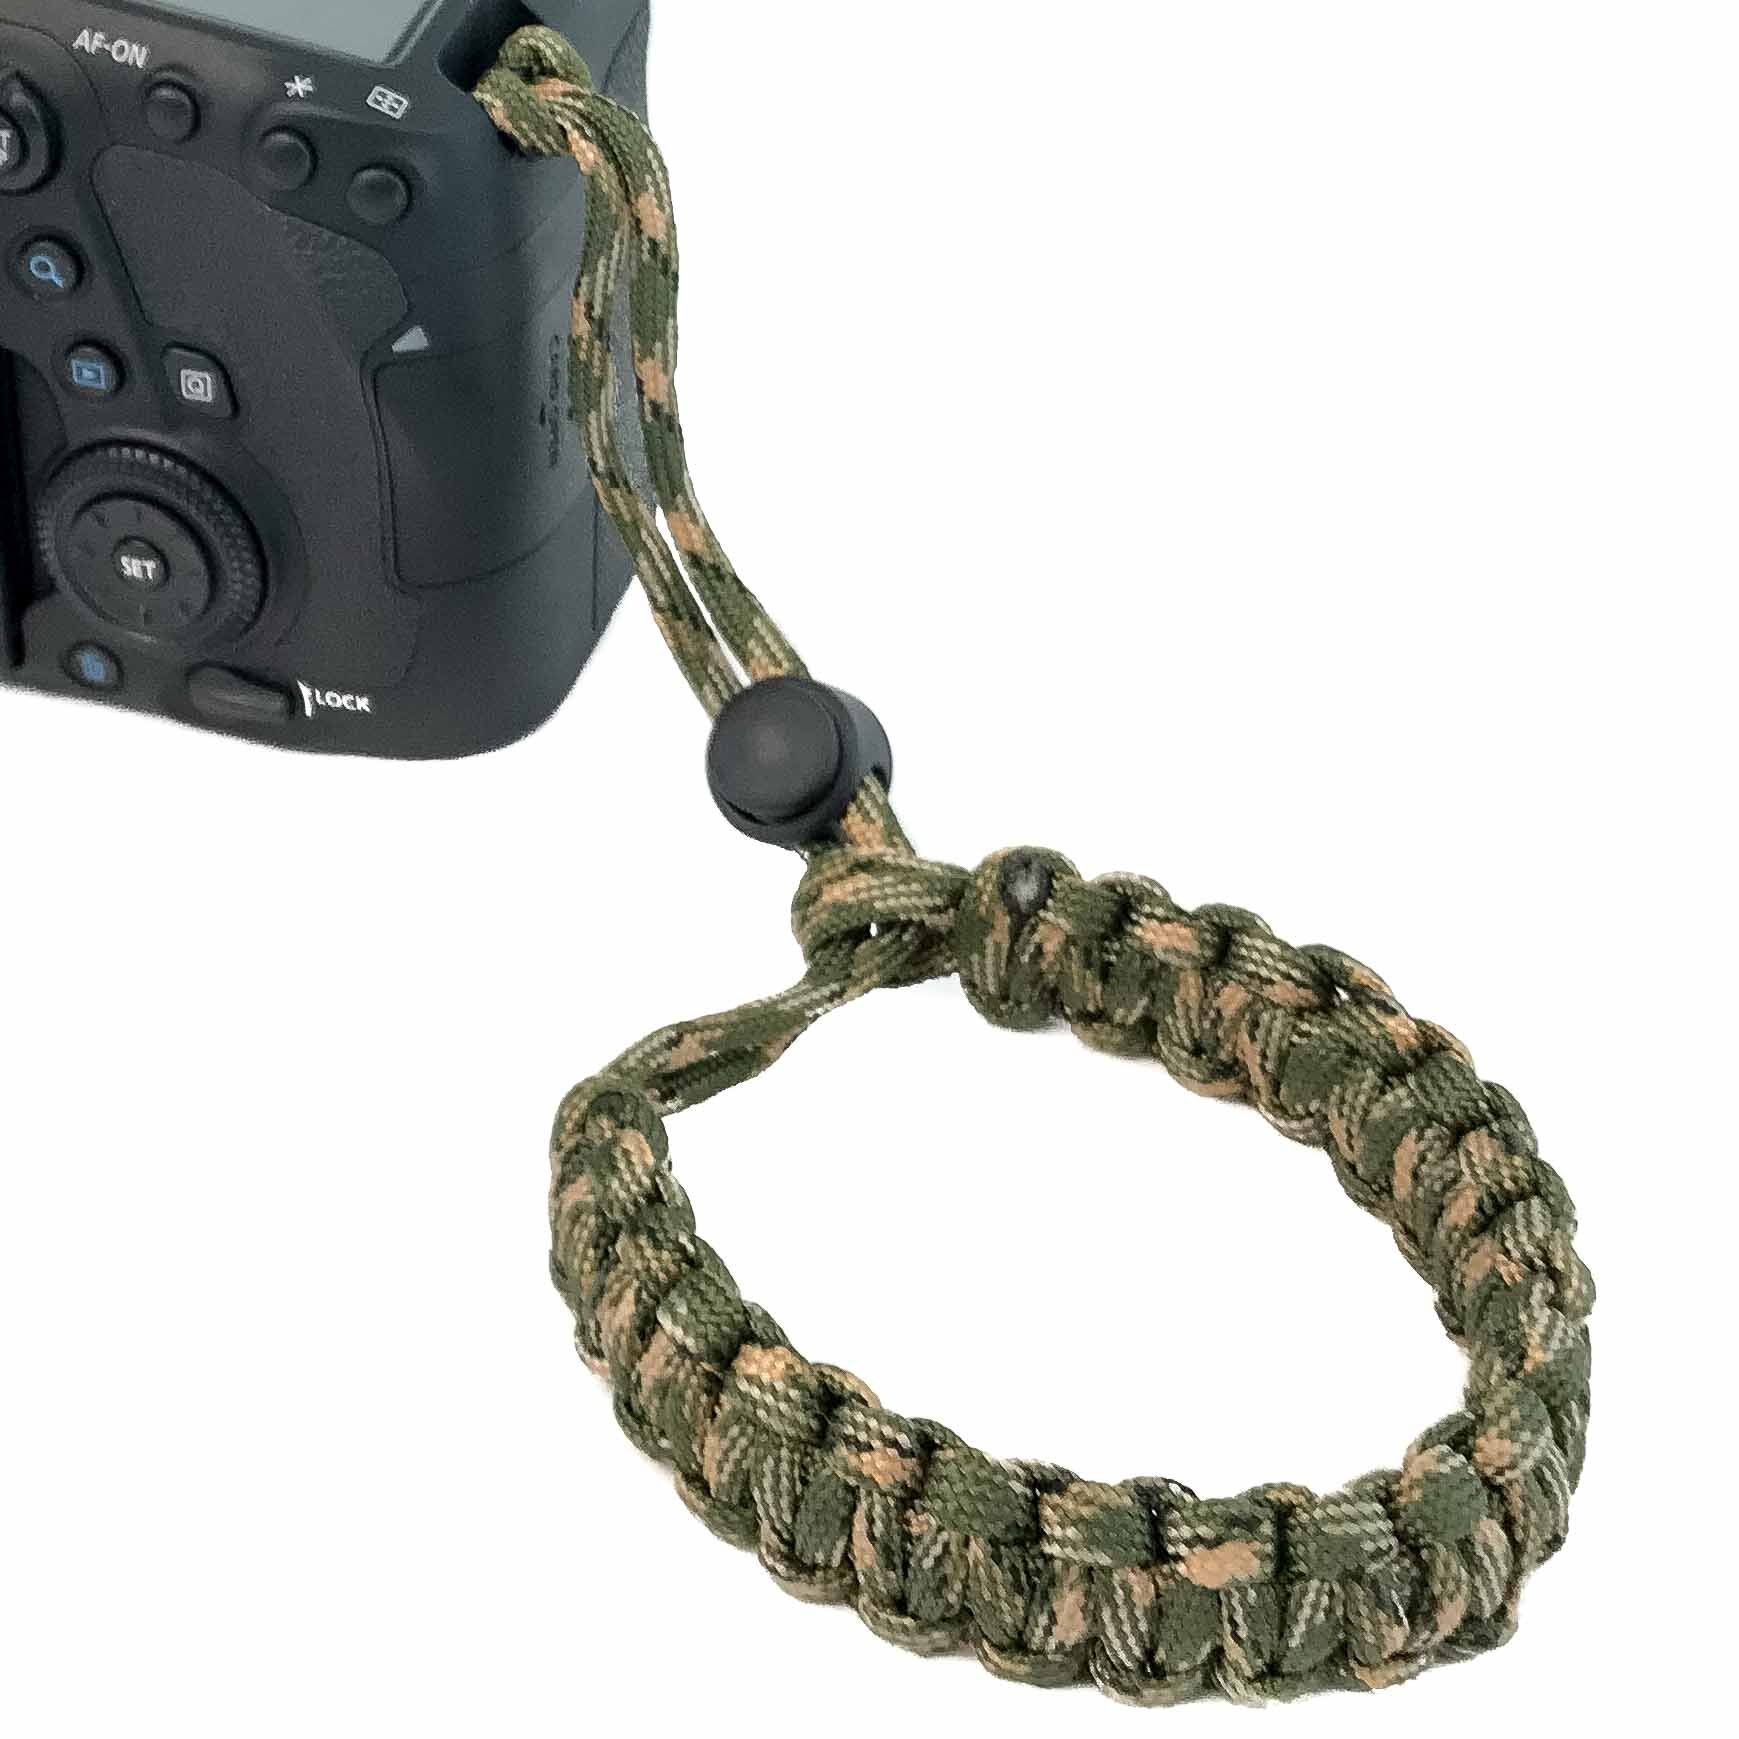 Handschlaufe am Grün Wrist-Band für Tragen Handgelenk Kamera: Paracord zum Camouflage DSLR Kamerazubehör-Set Kordel Kameragurt Tragegurt. Lens-Aid